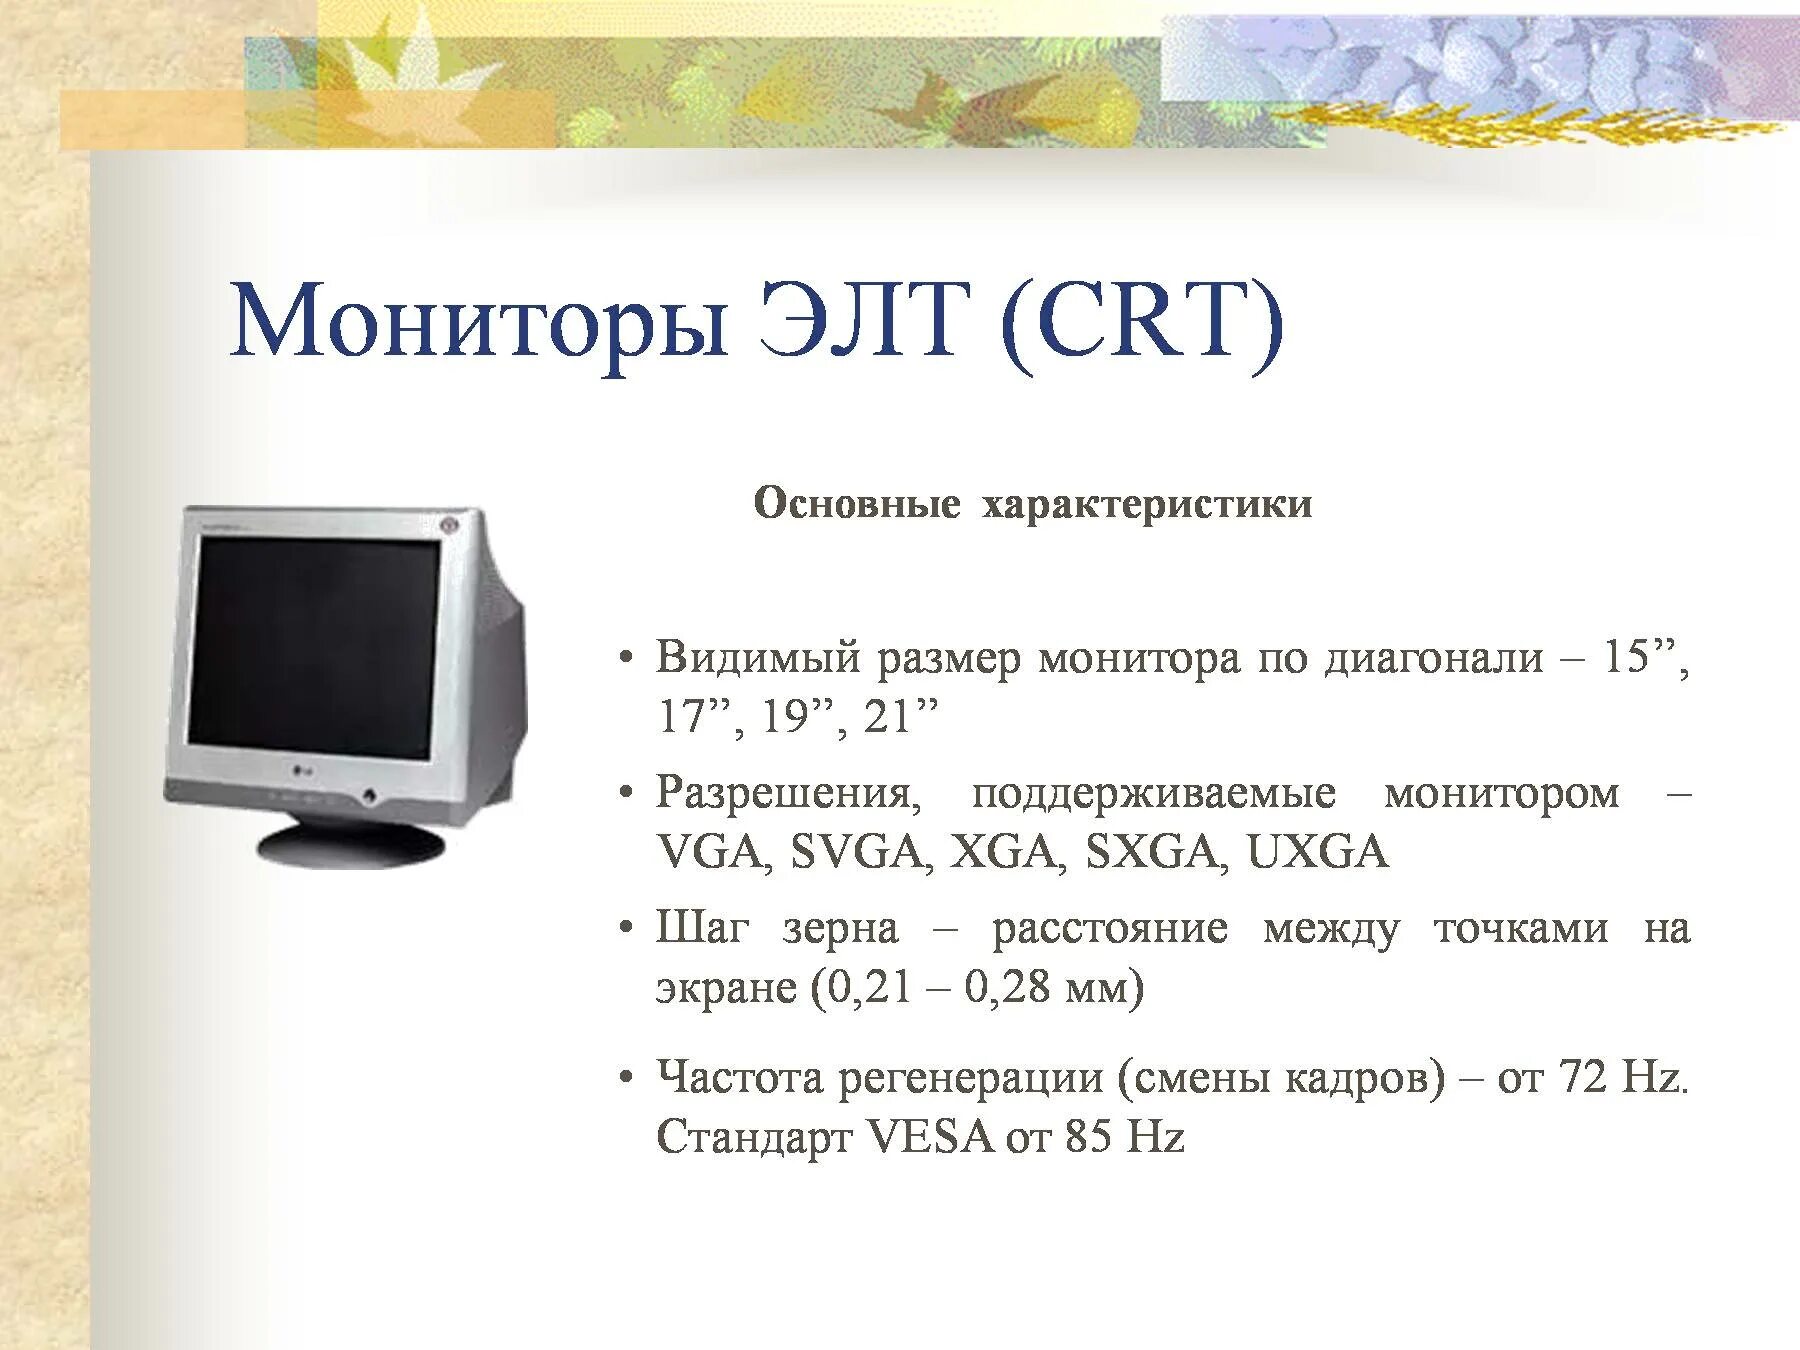 К мониторам относятся. ЭЛТ монитор характеристики. Основные параметры ЭЛТ мониторов. Основные характеристики монитора. CRT монитор характеристика.